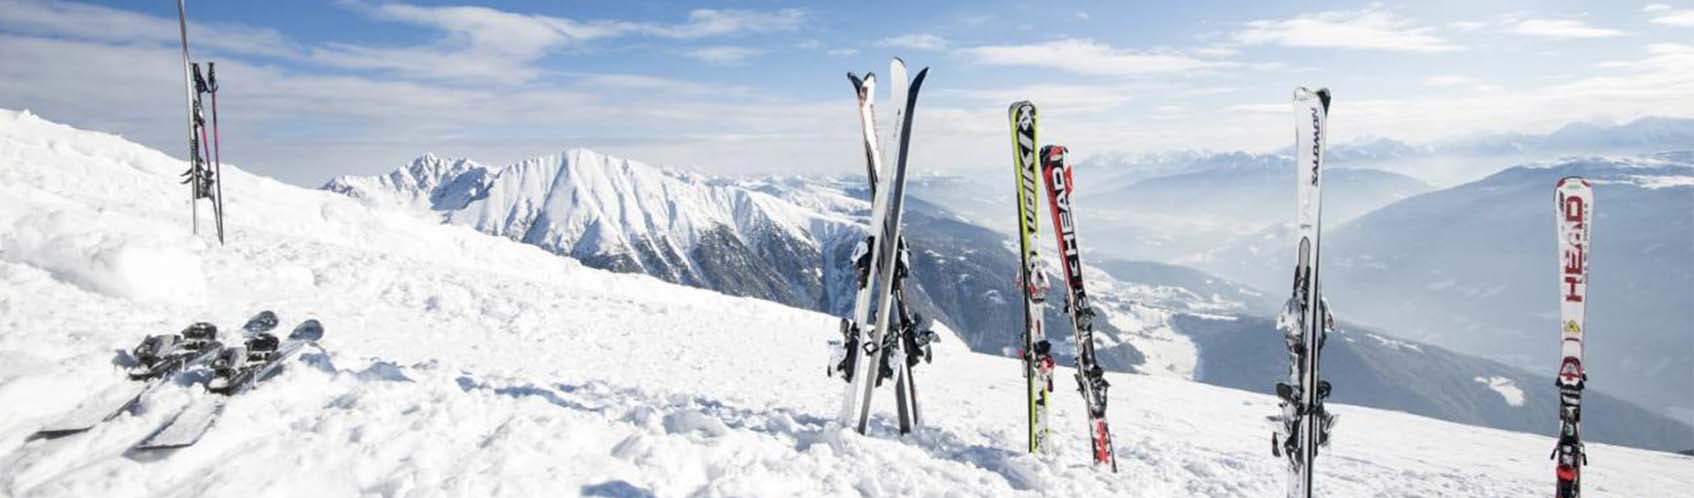 skis sur les montagnes